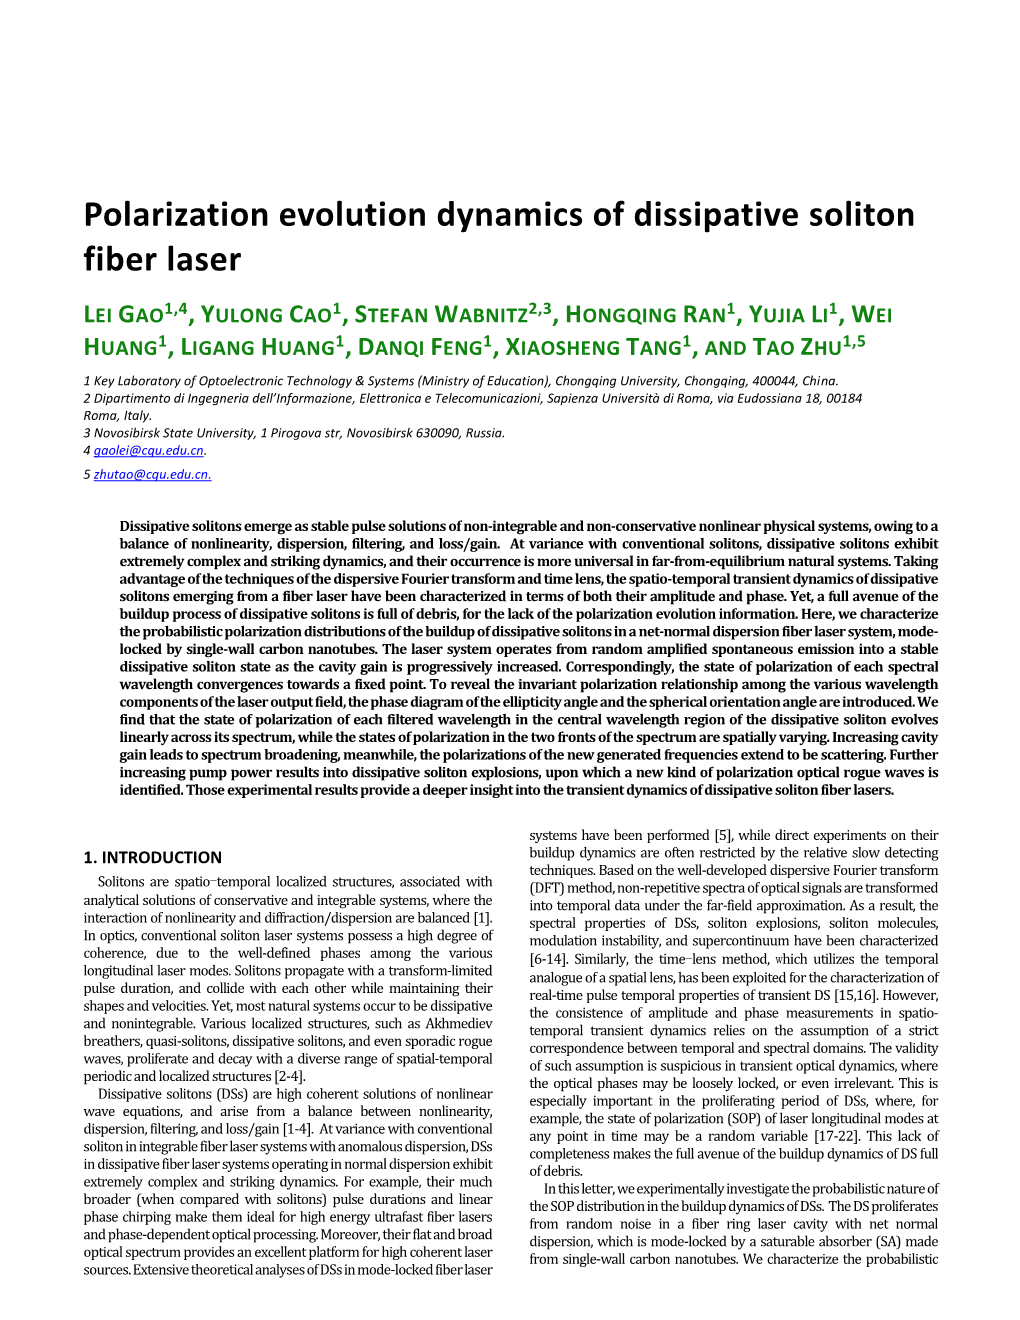 Polarization Evolution Dynamics of Dissipative Soliton Fiber Laser